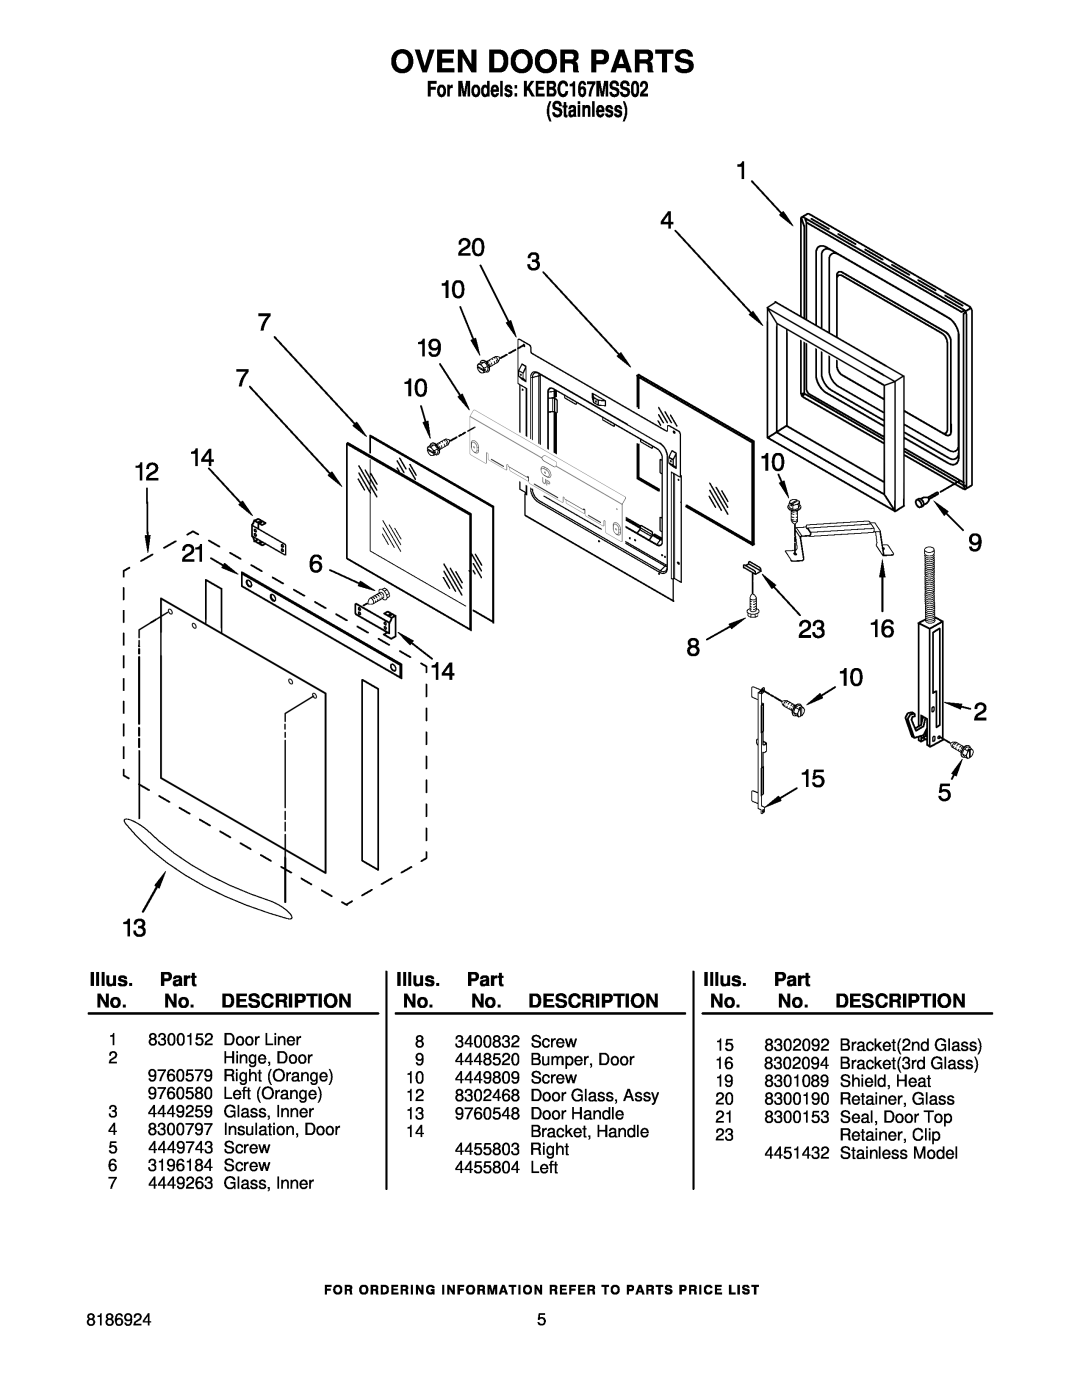 KitchenAid KEBC167MSS02 manual Oven Door Parts, Illus. Part No. No. DESCRIPTION 